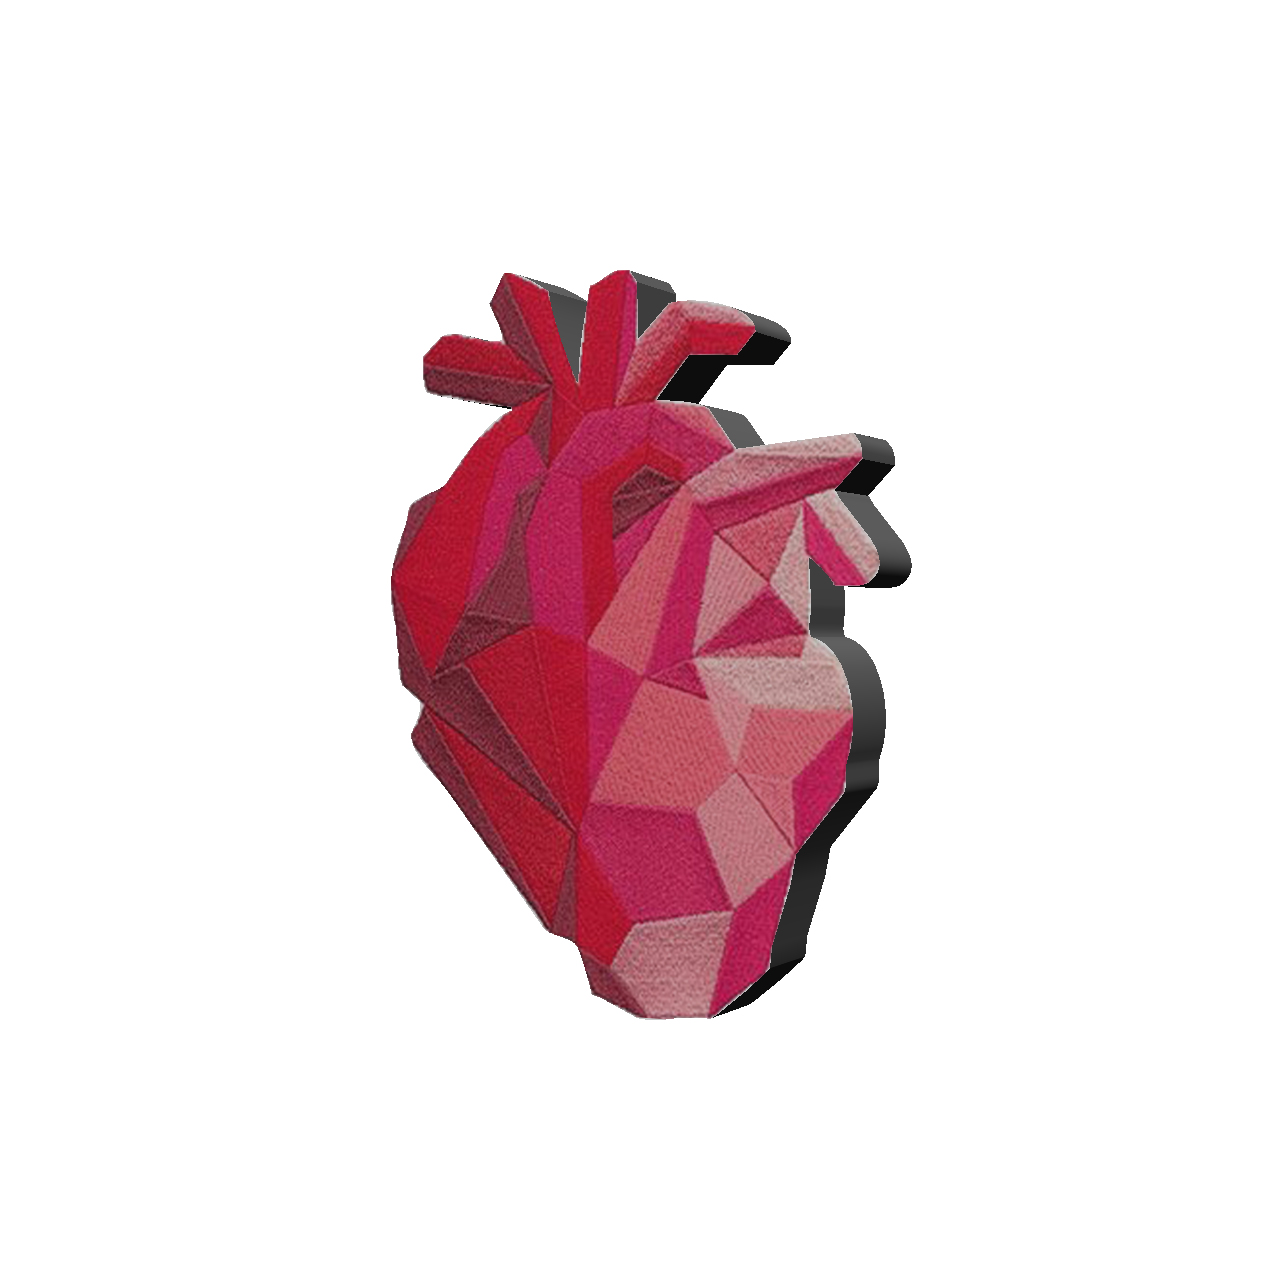 پیکسل طرح قلب کد 319 -  - 1